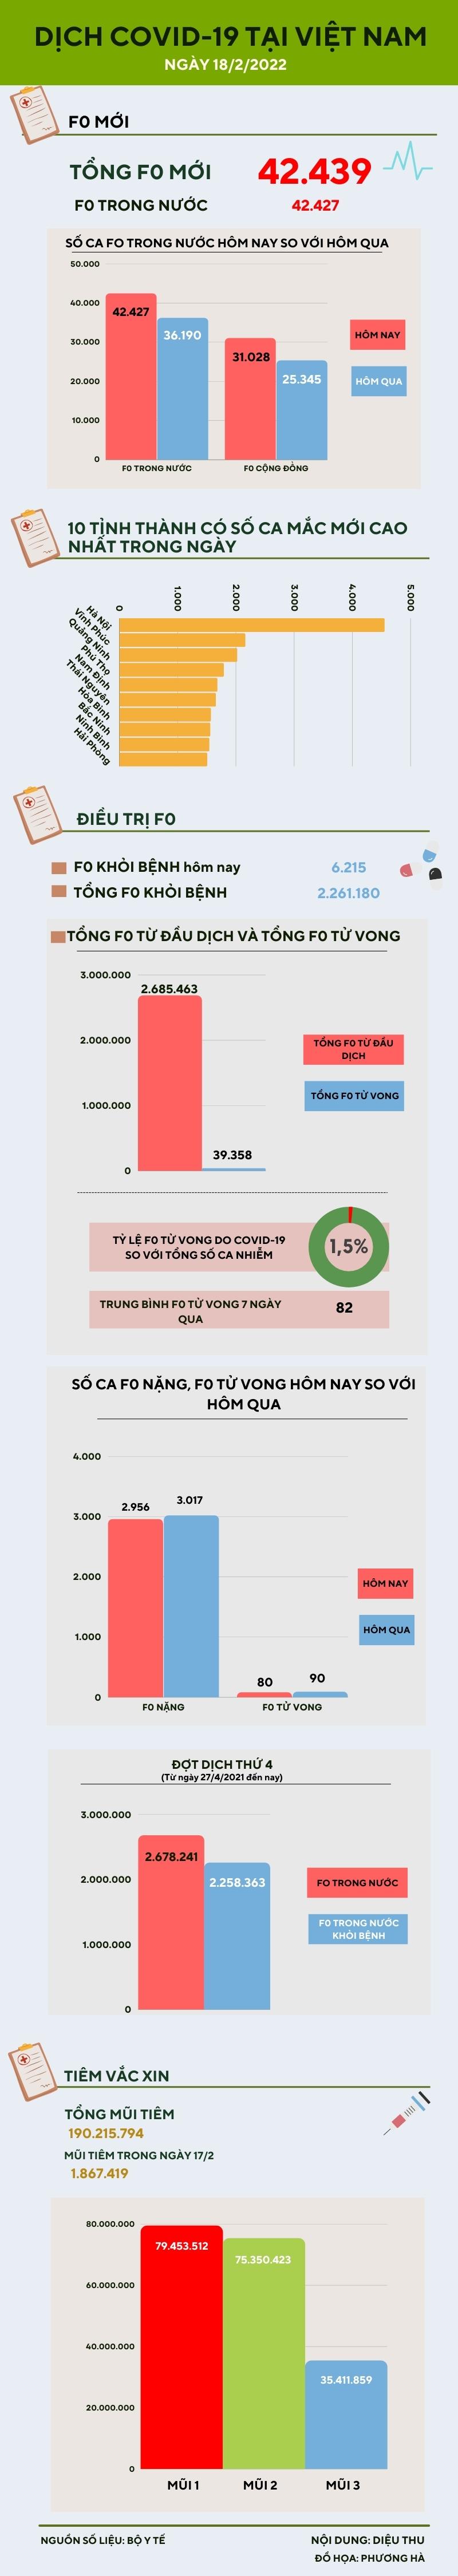 Ngày 18/2: Thêm 42.427 ca COVID-19 trong nước, riêng Hà Nội có 4.549 ca - 1